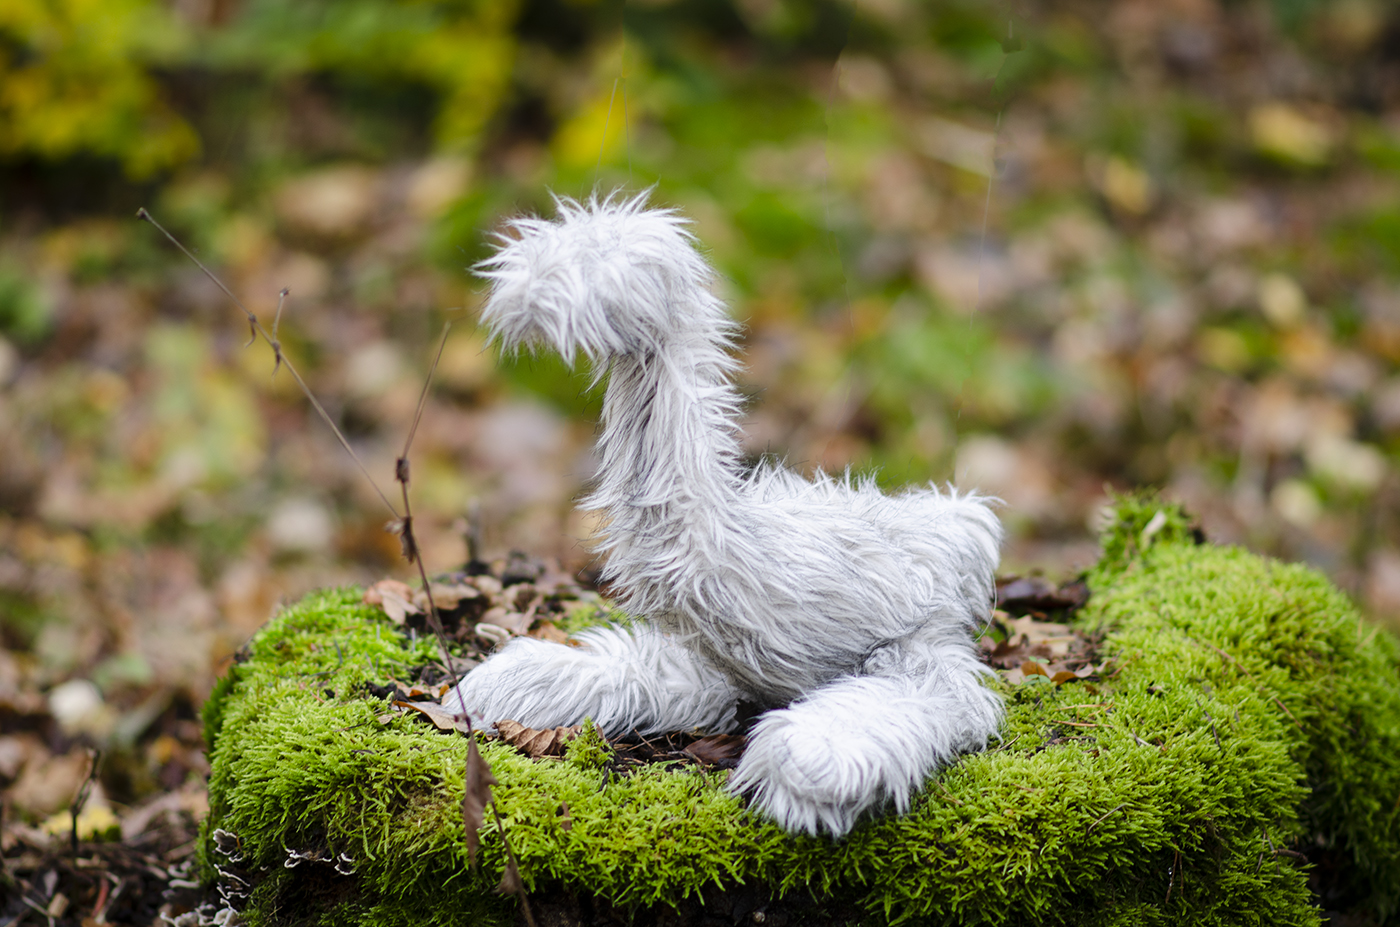 Ett lurvigt, vitt mjukisdjur som påminner om en hund, sitter på en sten med mossa. Djuret är känt som "Lufsen".